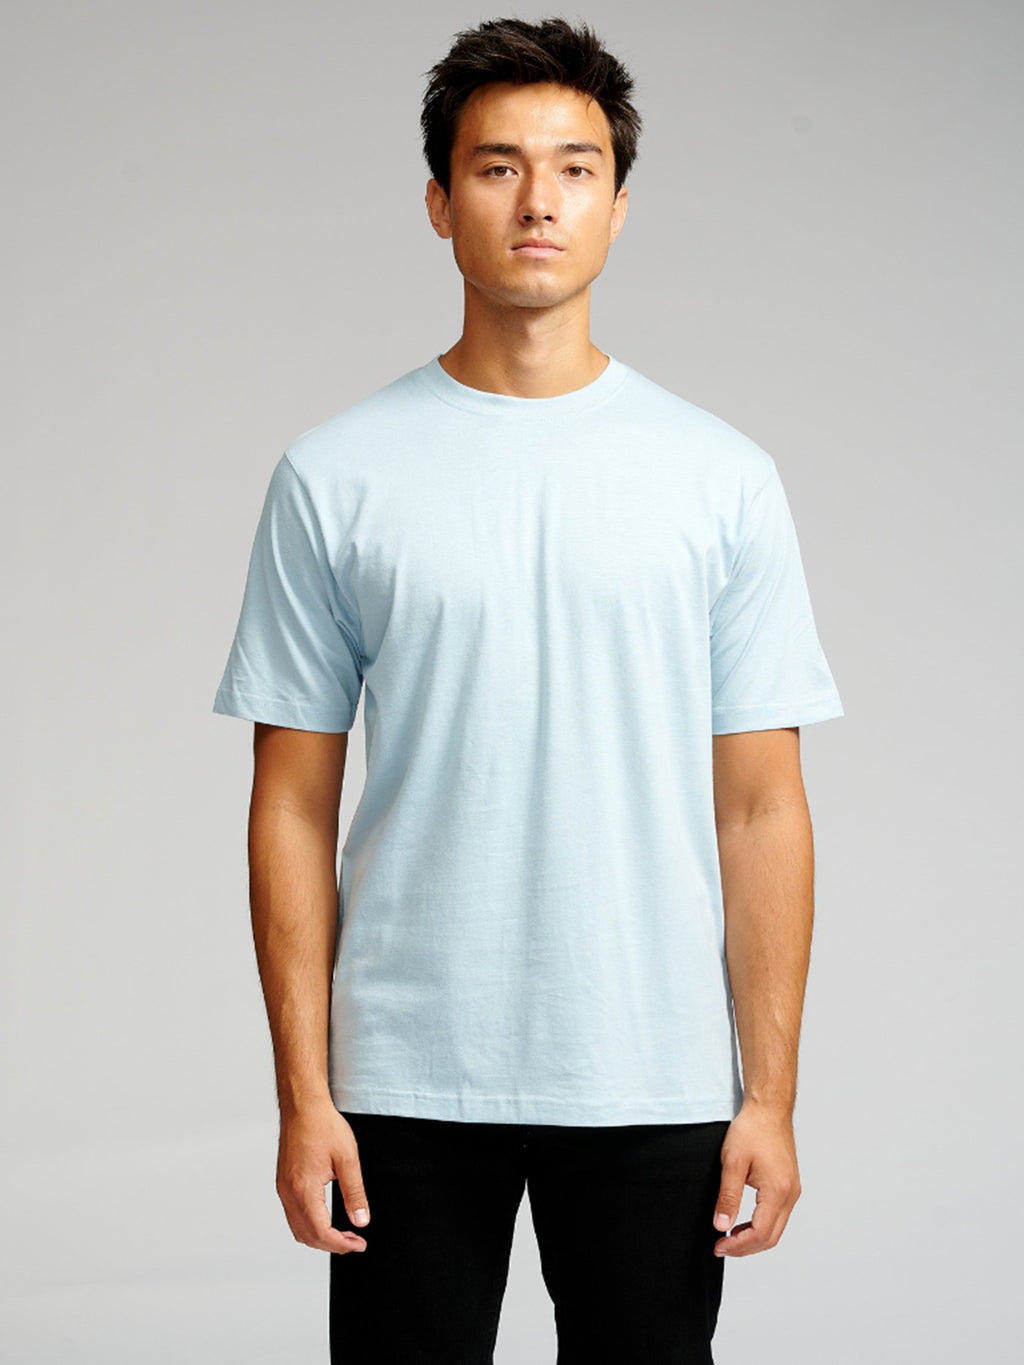 T-shirt surdimensionné - Bleu ciel